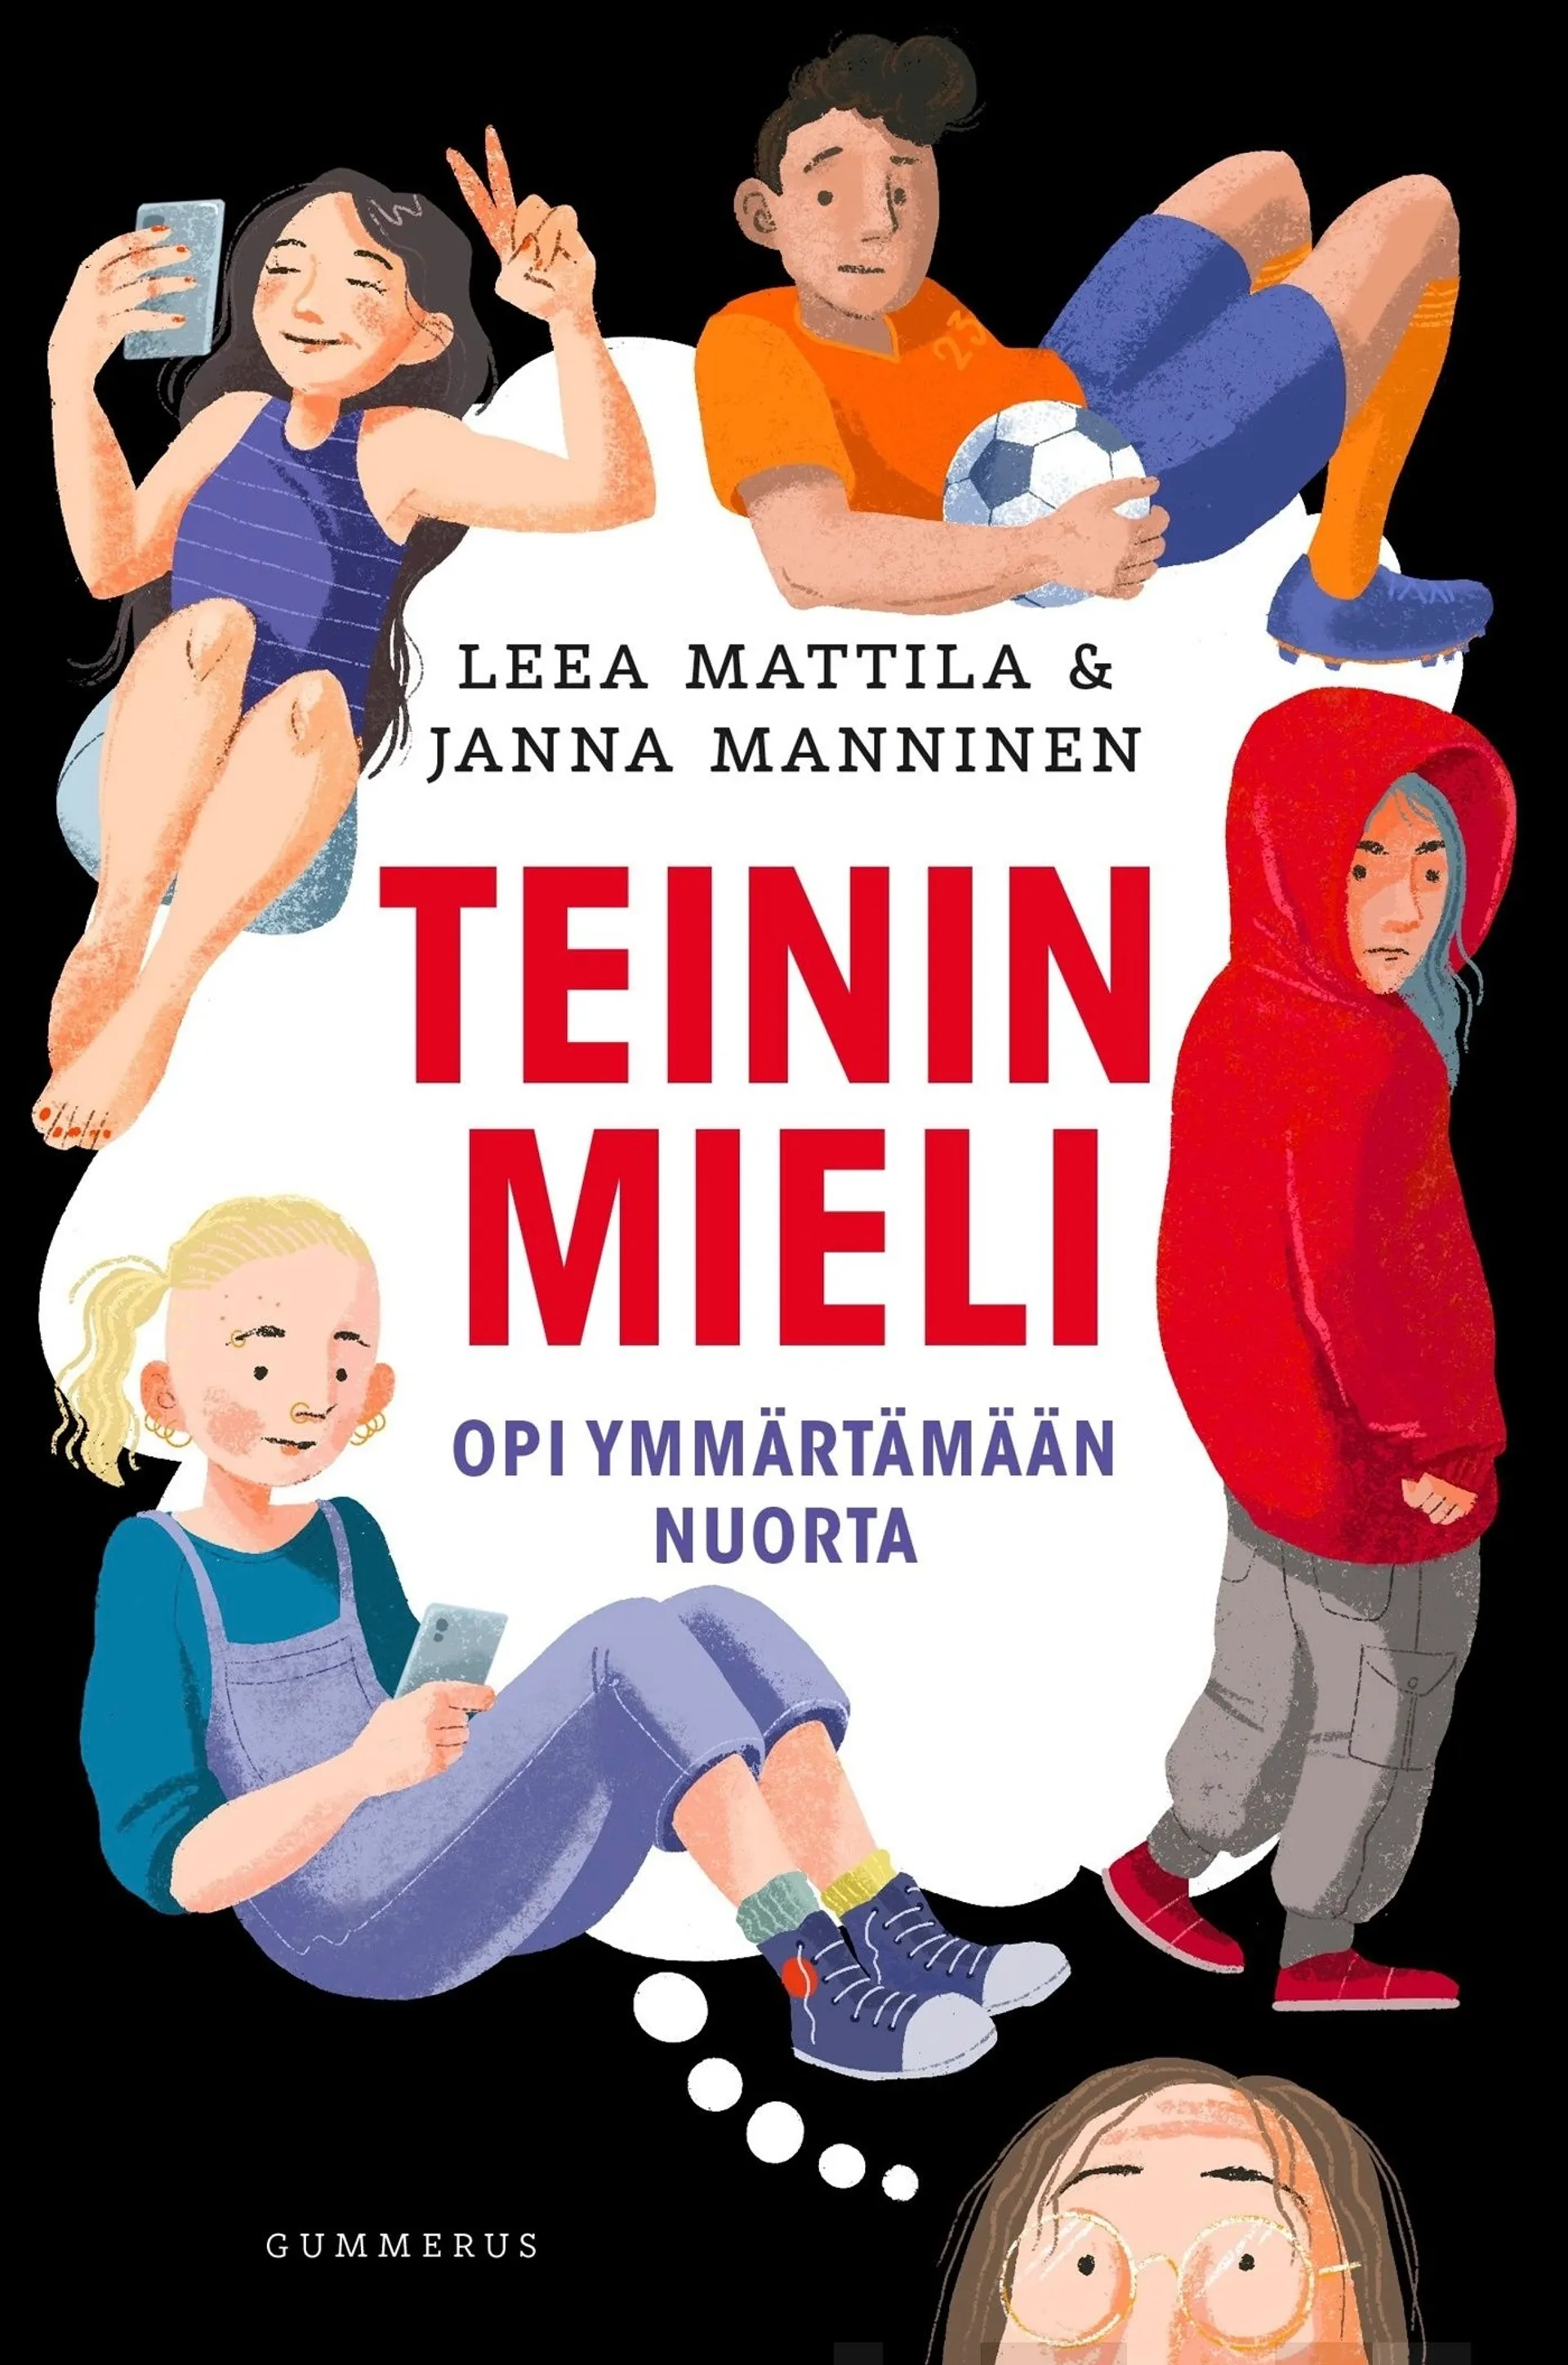 Mattila, Teinin mieli - Opi ymmärtämään nuorta